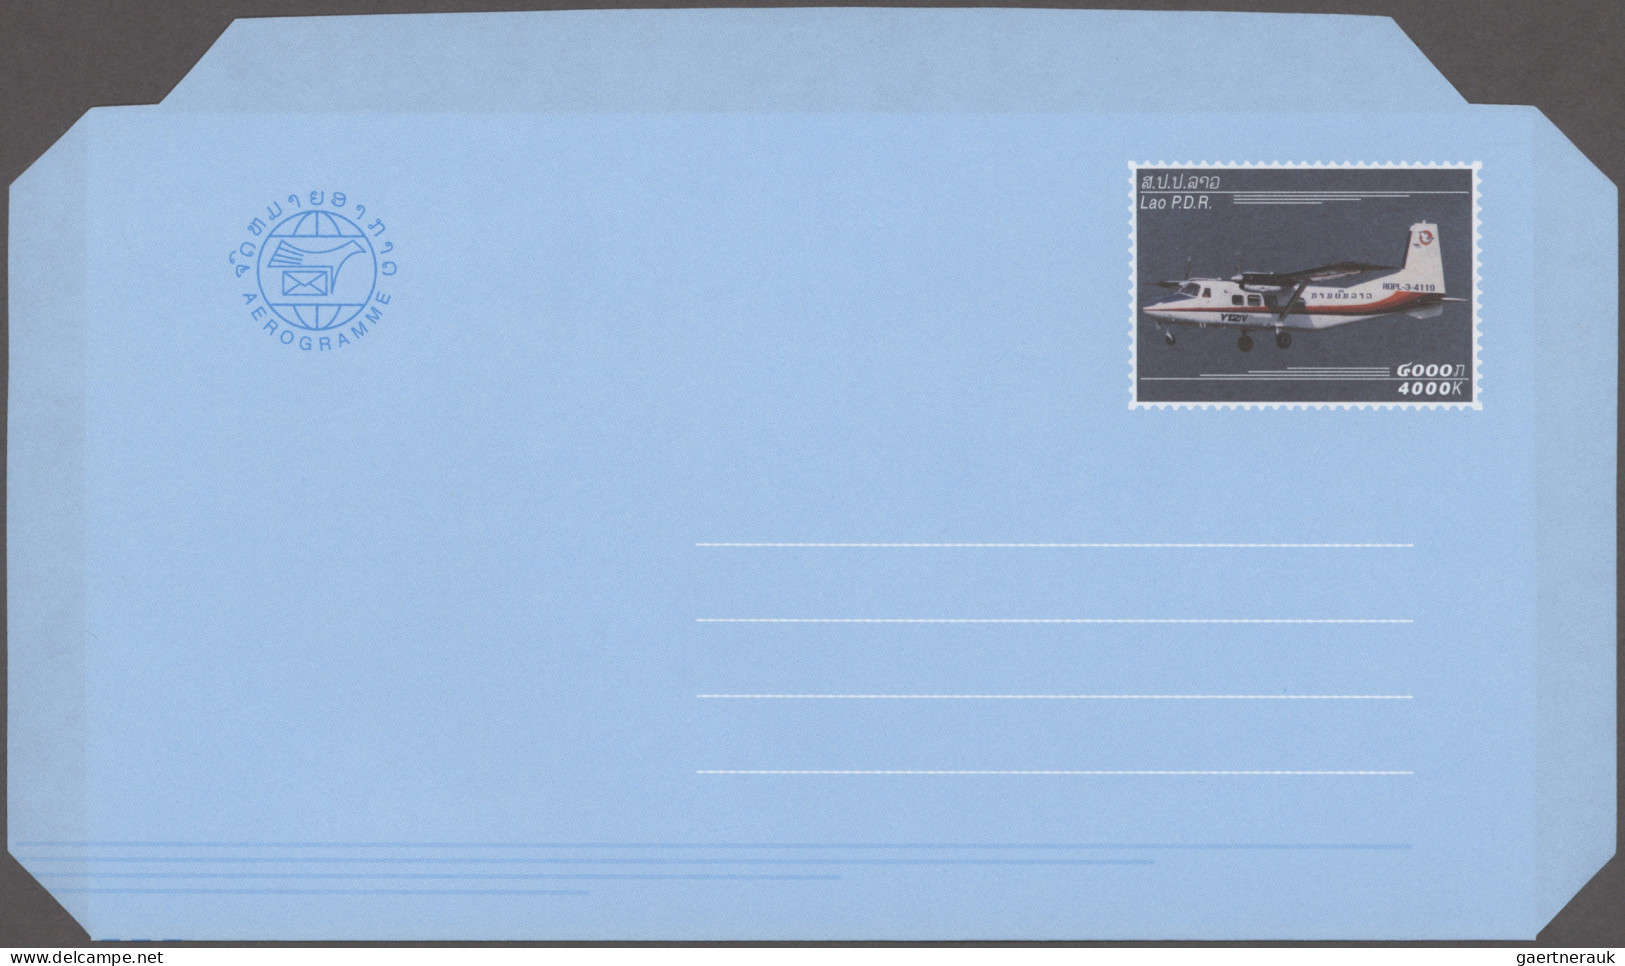 Cambodia & Laos: 1971/2002, Laos+Cambodia, collection to 17 air letter sheets un